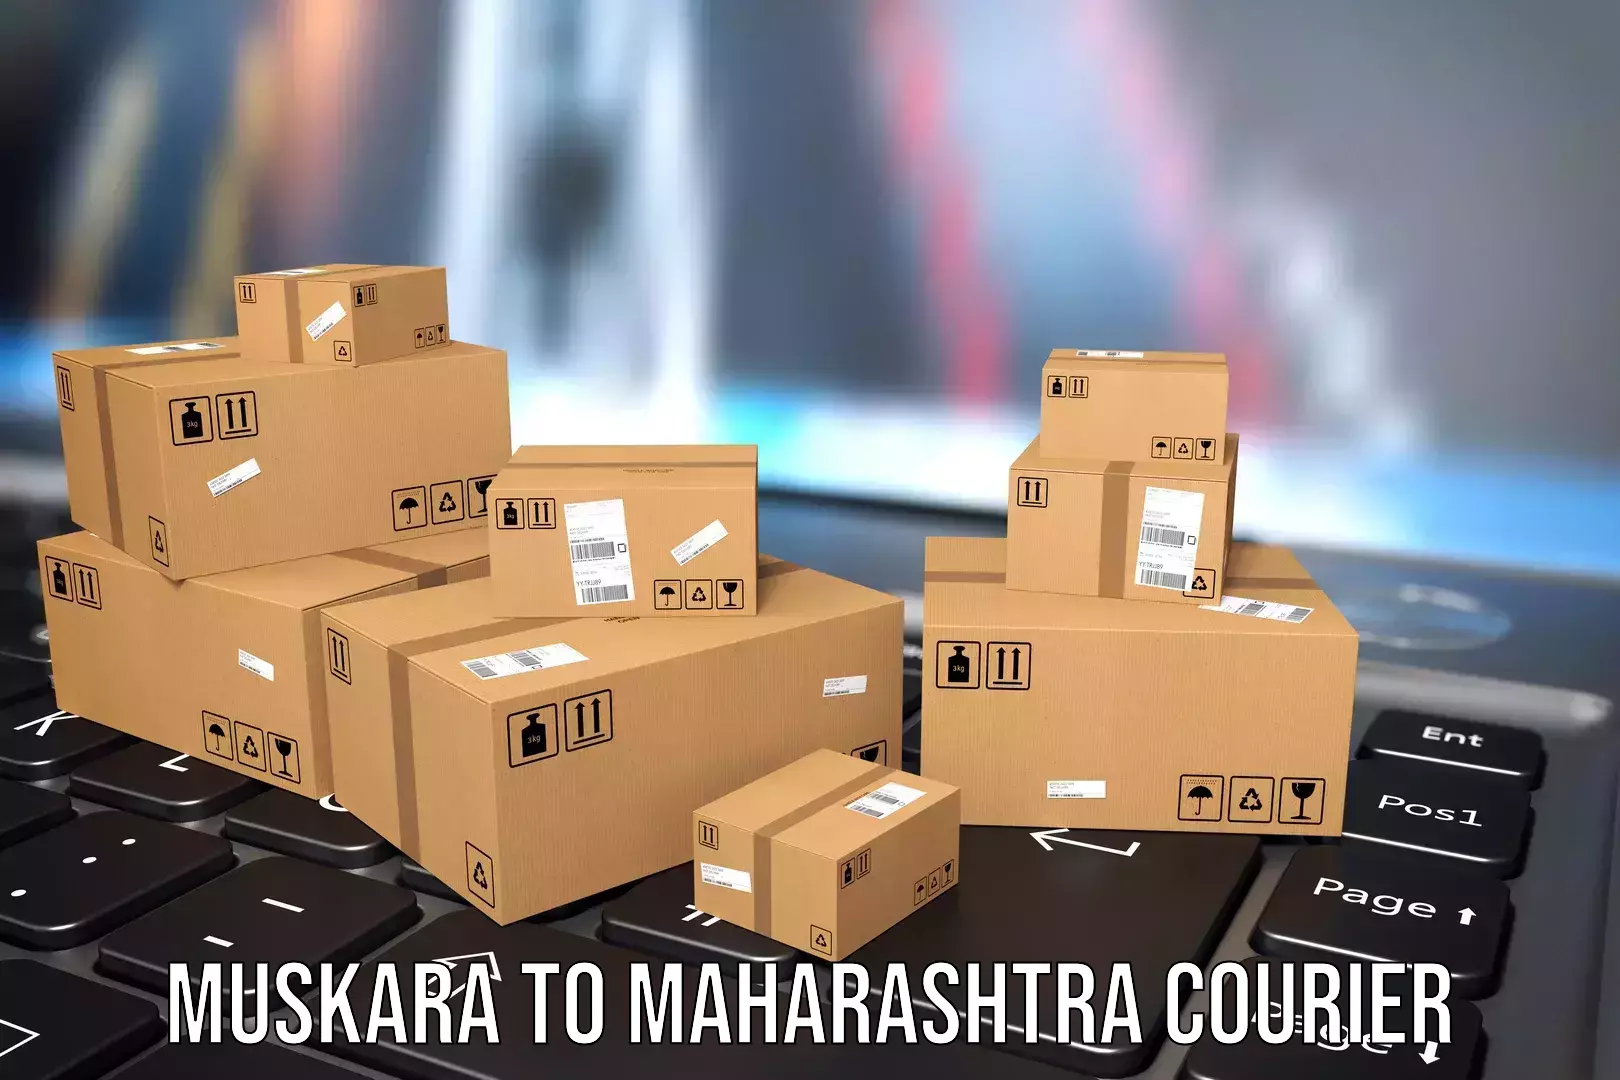 Luggage delivery app Muskara to Maharashtra